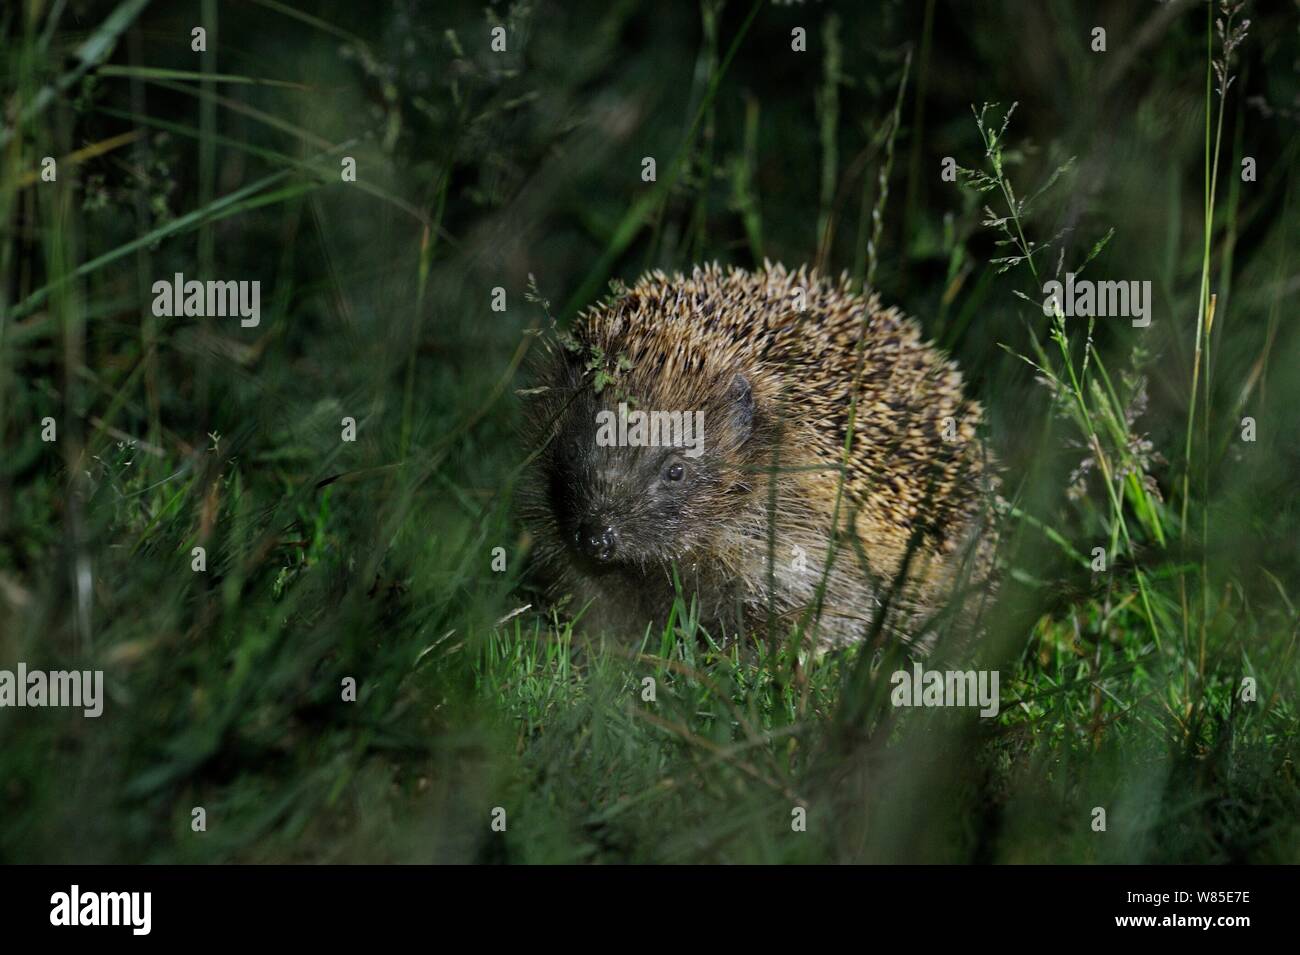 European hedgehog (Erinaceus europaeus) in garden, UK, November. Stock Photo